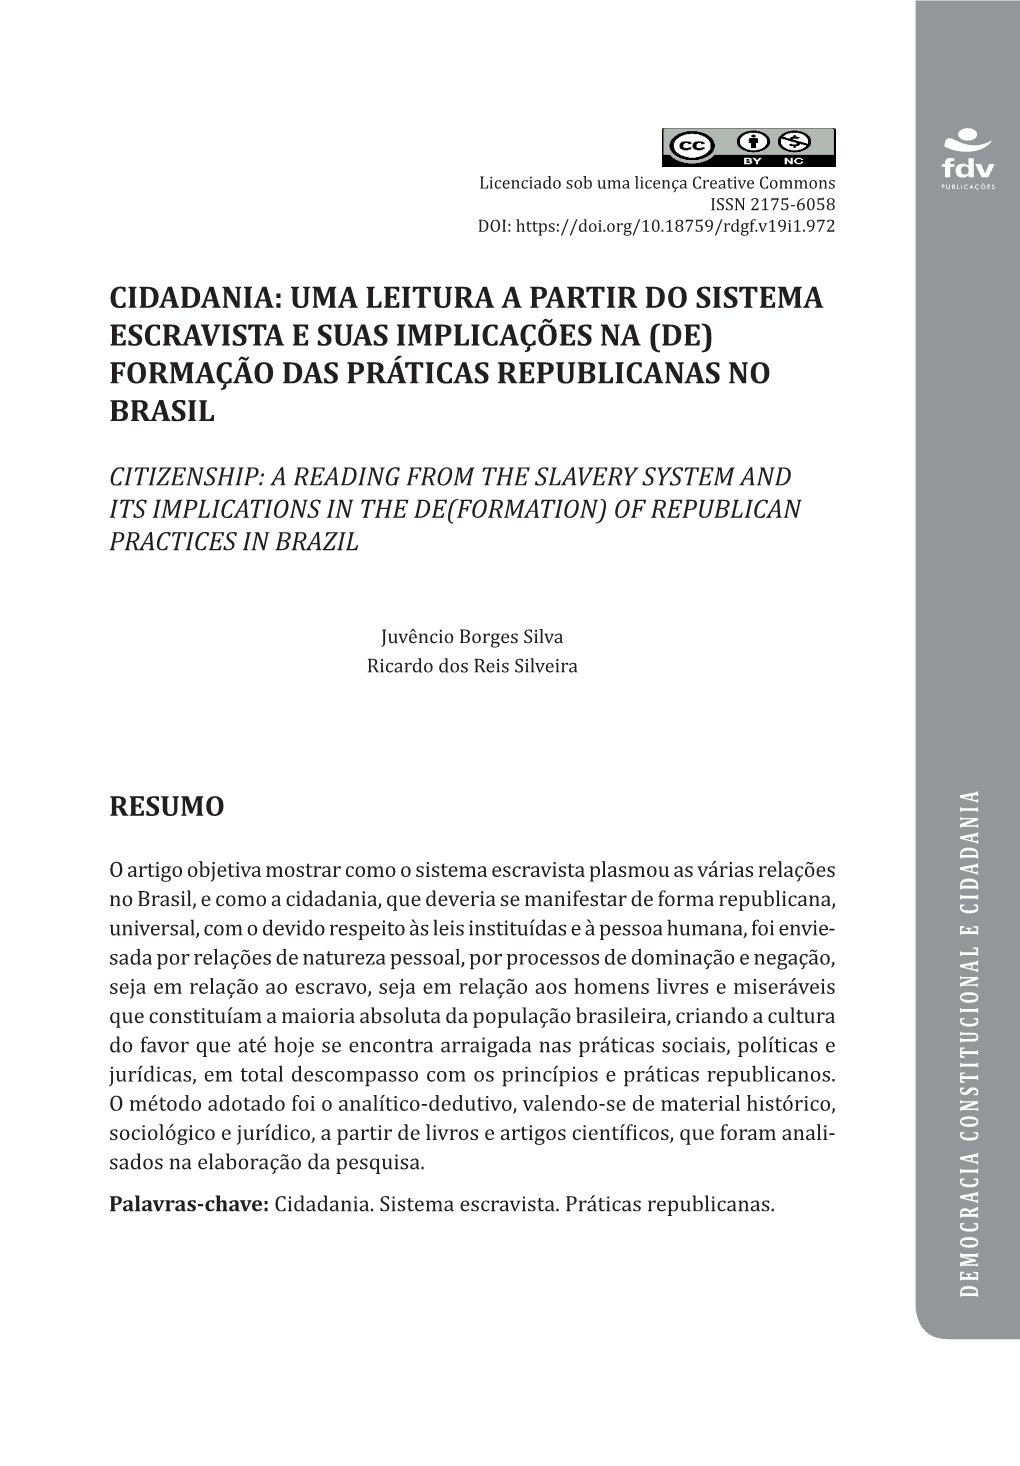 Cidadania: Uma Leitura a Partir Do Sistema Escravista E Suas Implicações Na (De) Formação Das Práticas Republicanas No Brasil